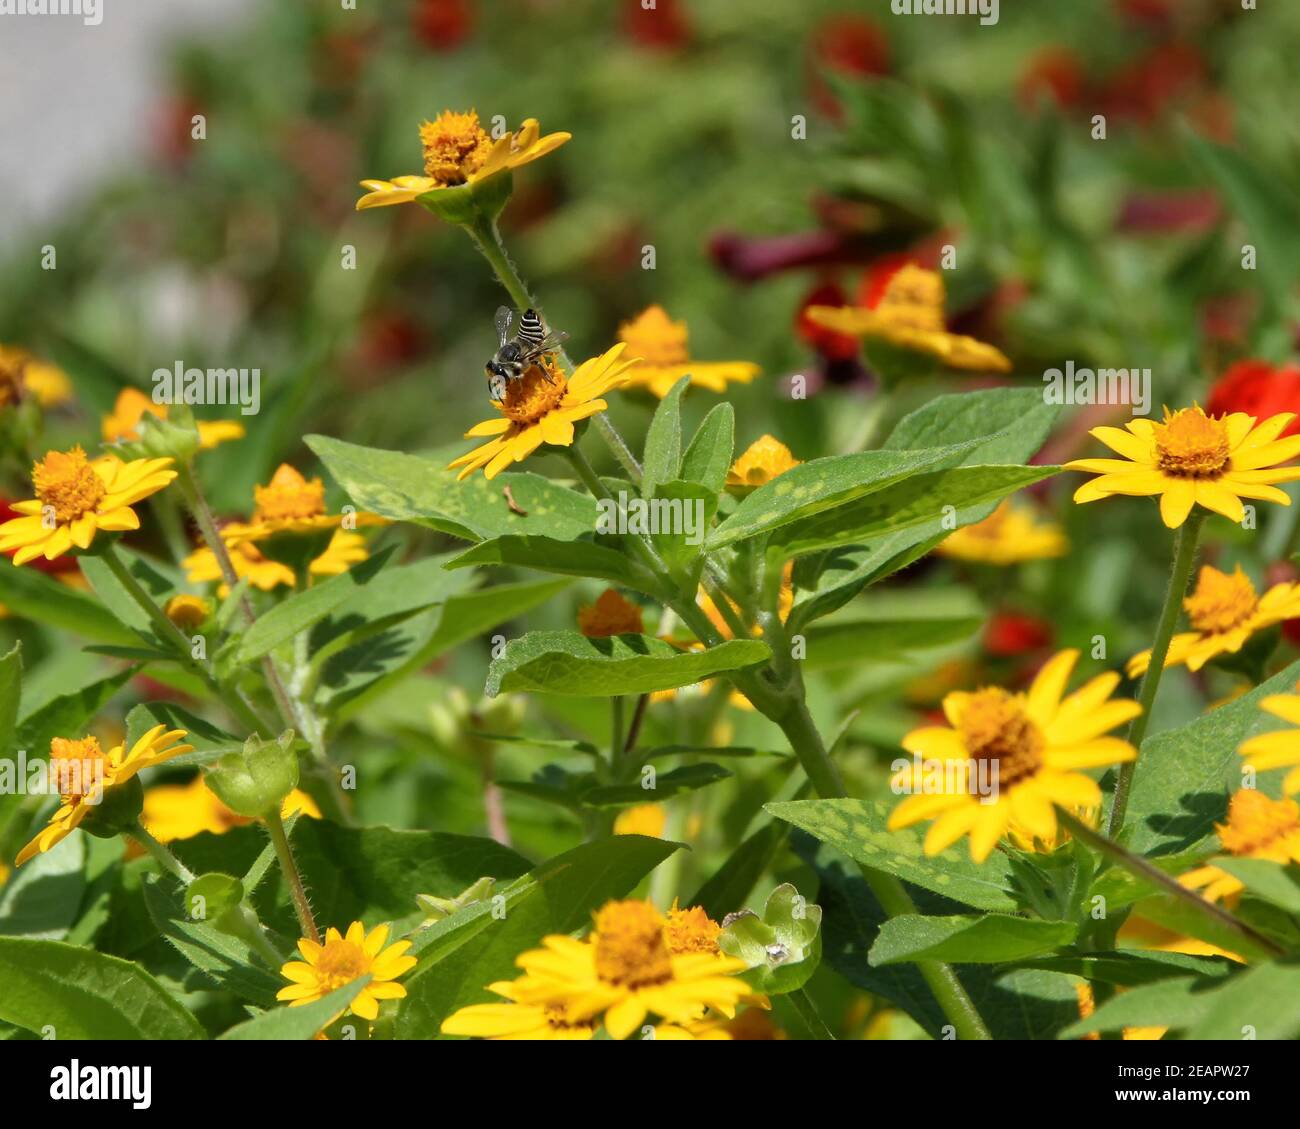 Una piccola ape Texas Leaf Cutter Bee nera e bianca raccoglie il polline da un fiore giallo in un giardino municipale di Oklahoma City. Foto Stock